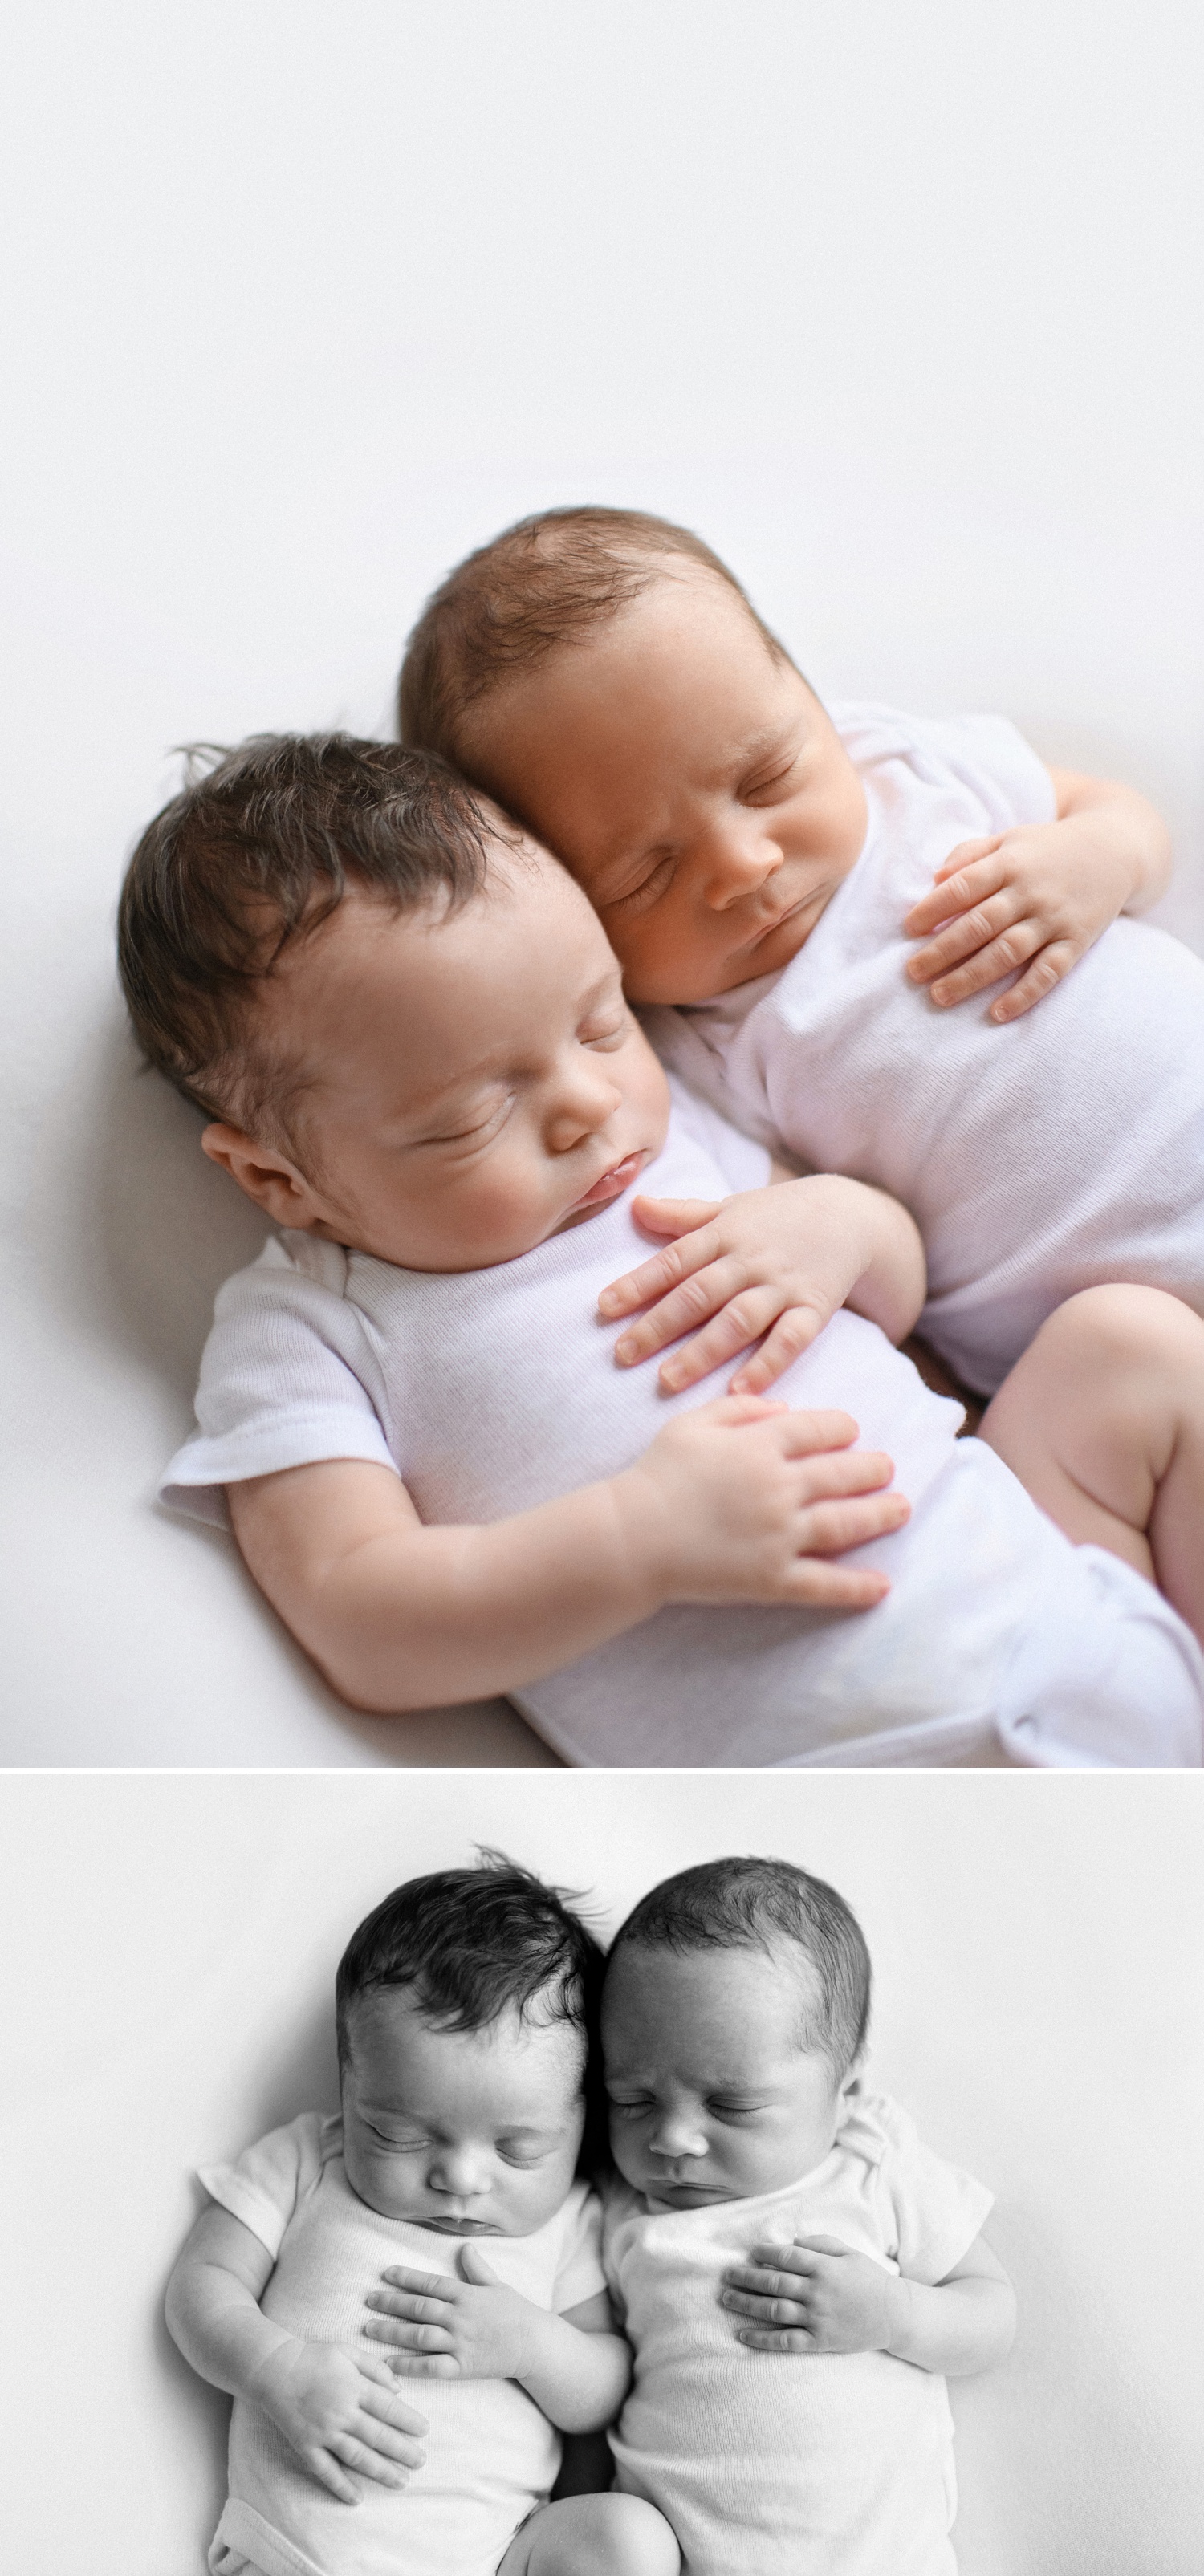 Wondering when to schedule your twin's newborn photos?